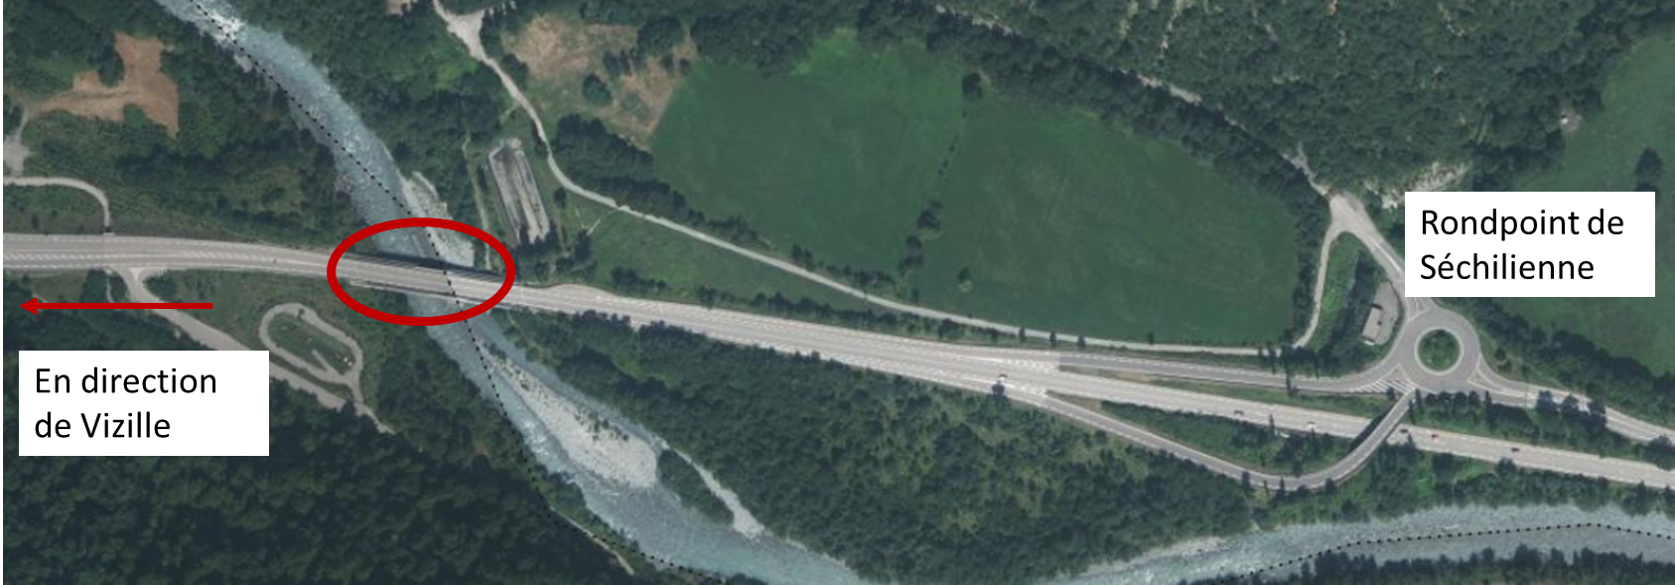 Image de couverture - Réparation des soudures Pont de la Romanche RD 91